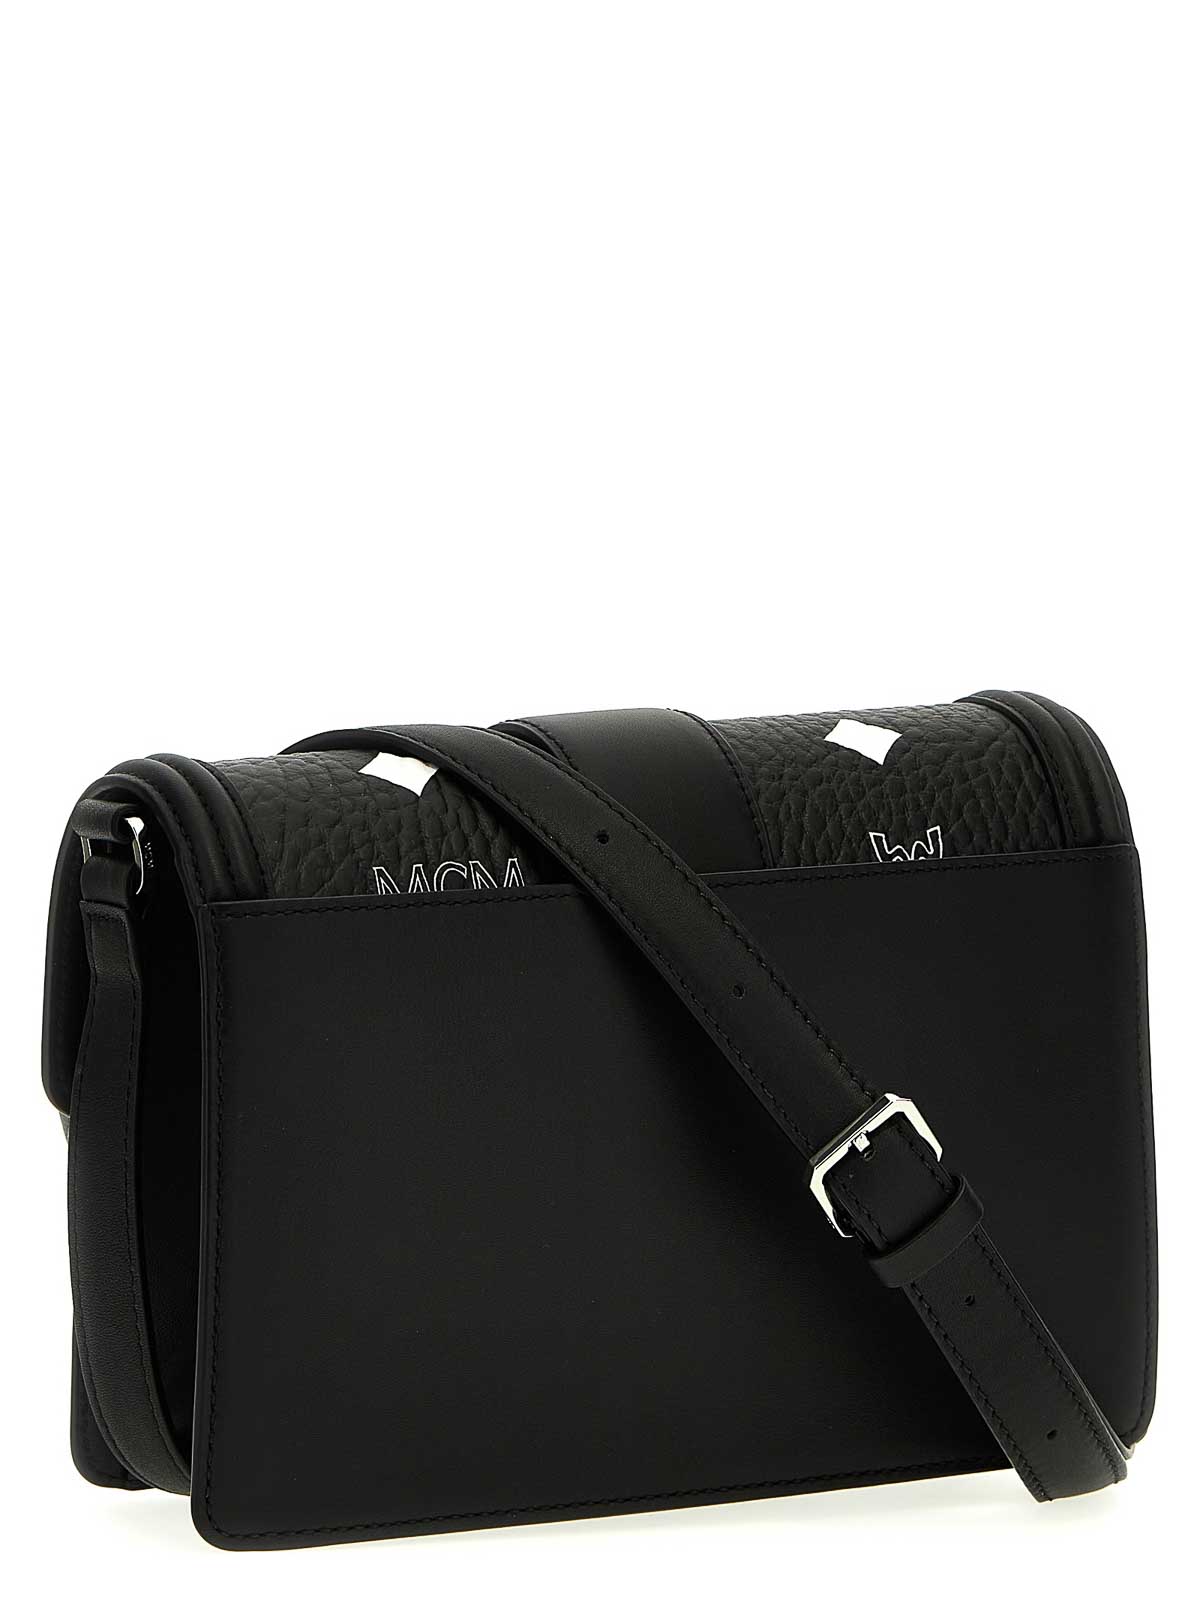 MCM, Bags, Mcm Black Leather Crossbody Shoulder Bag